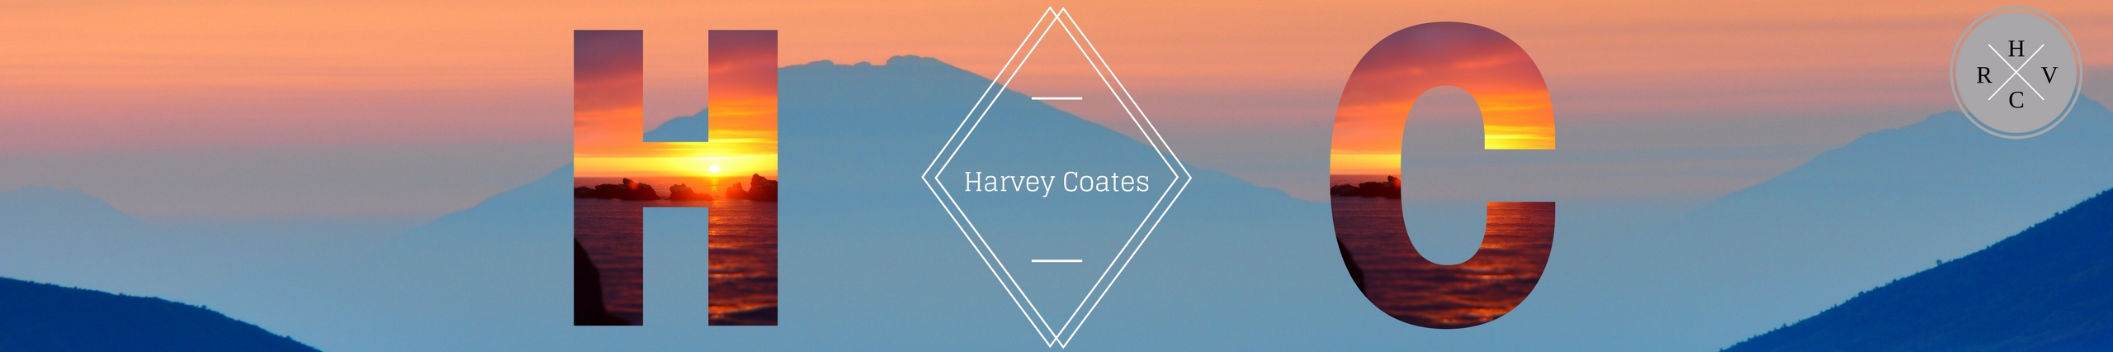 Harvey Coates